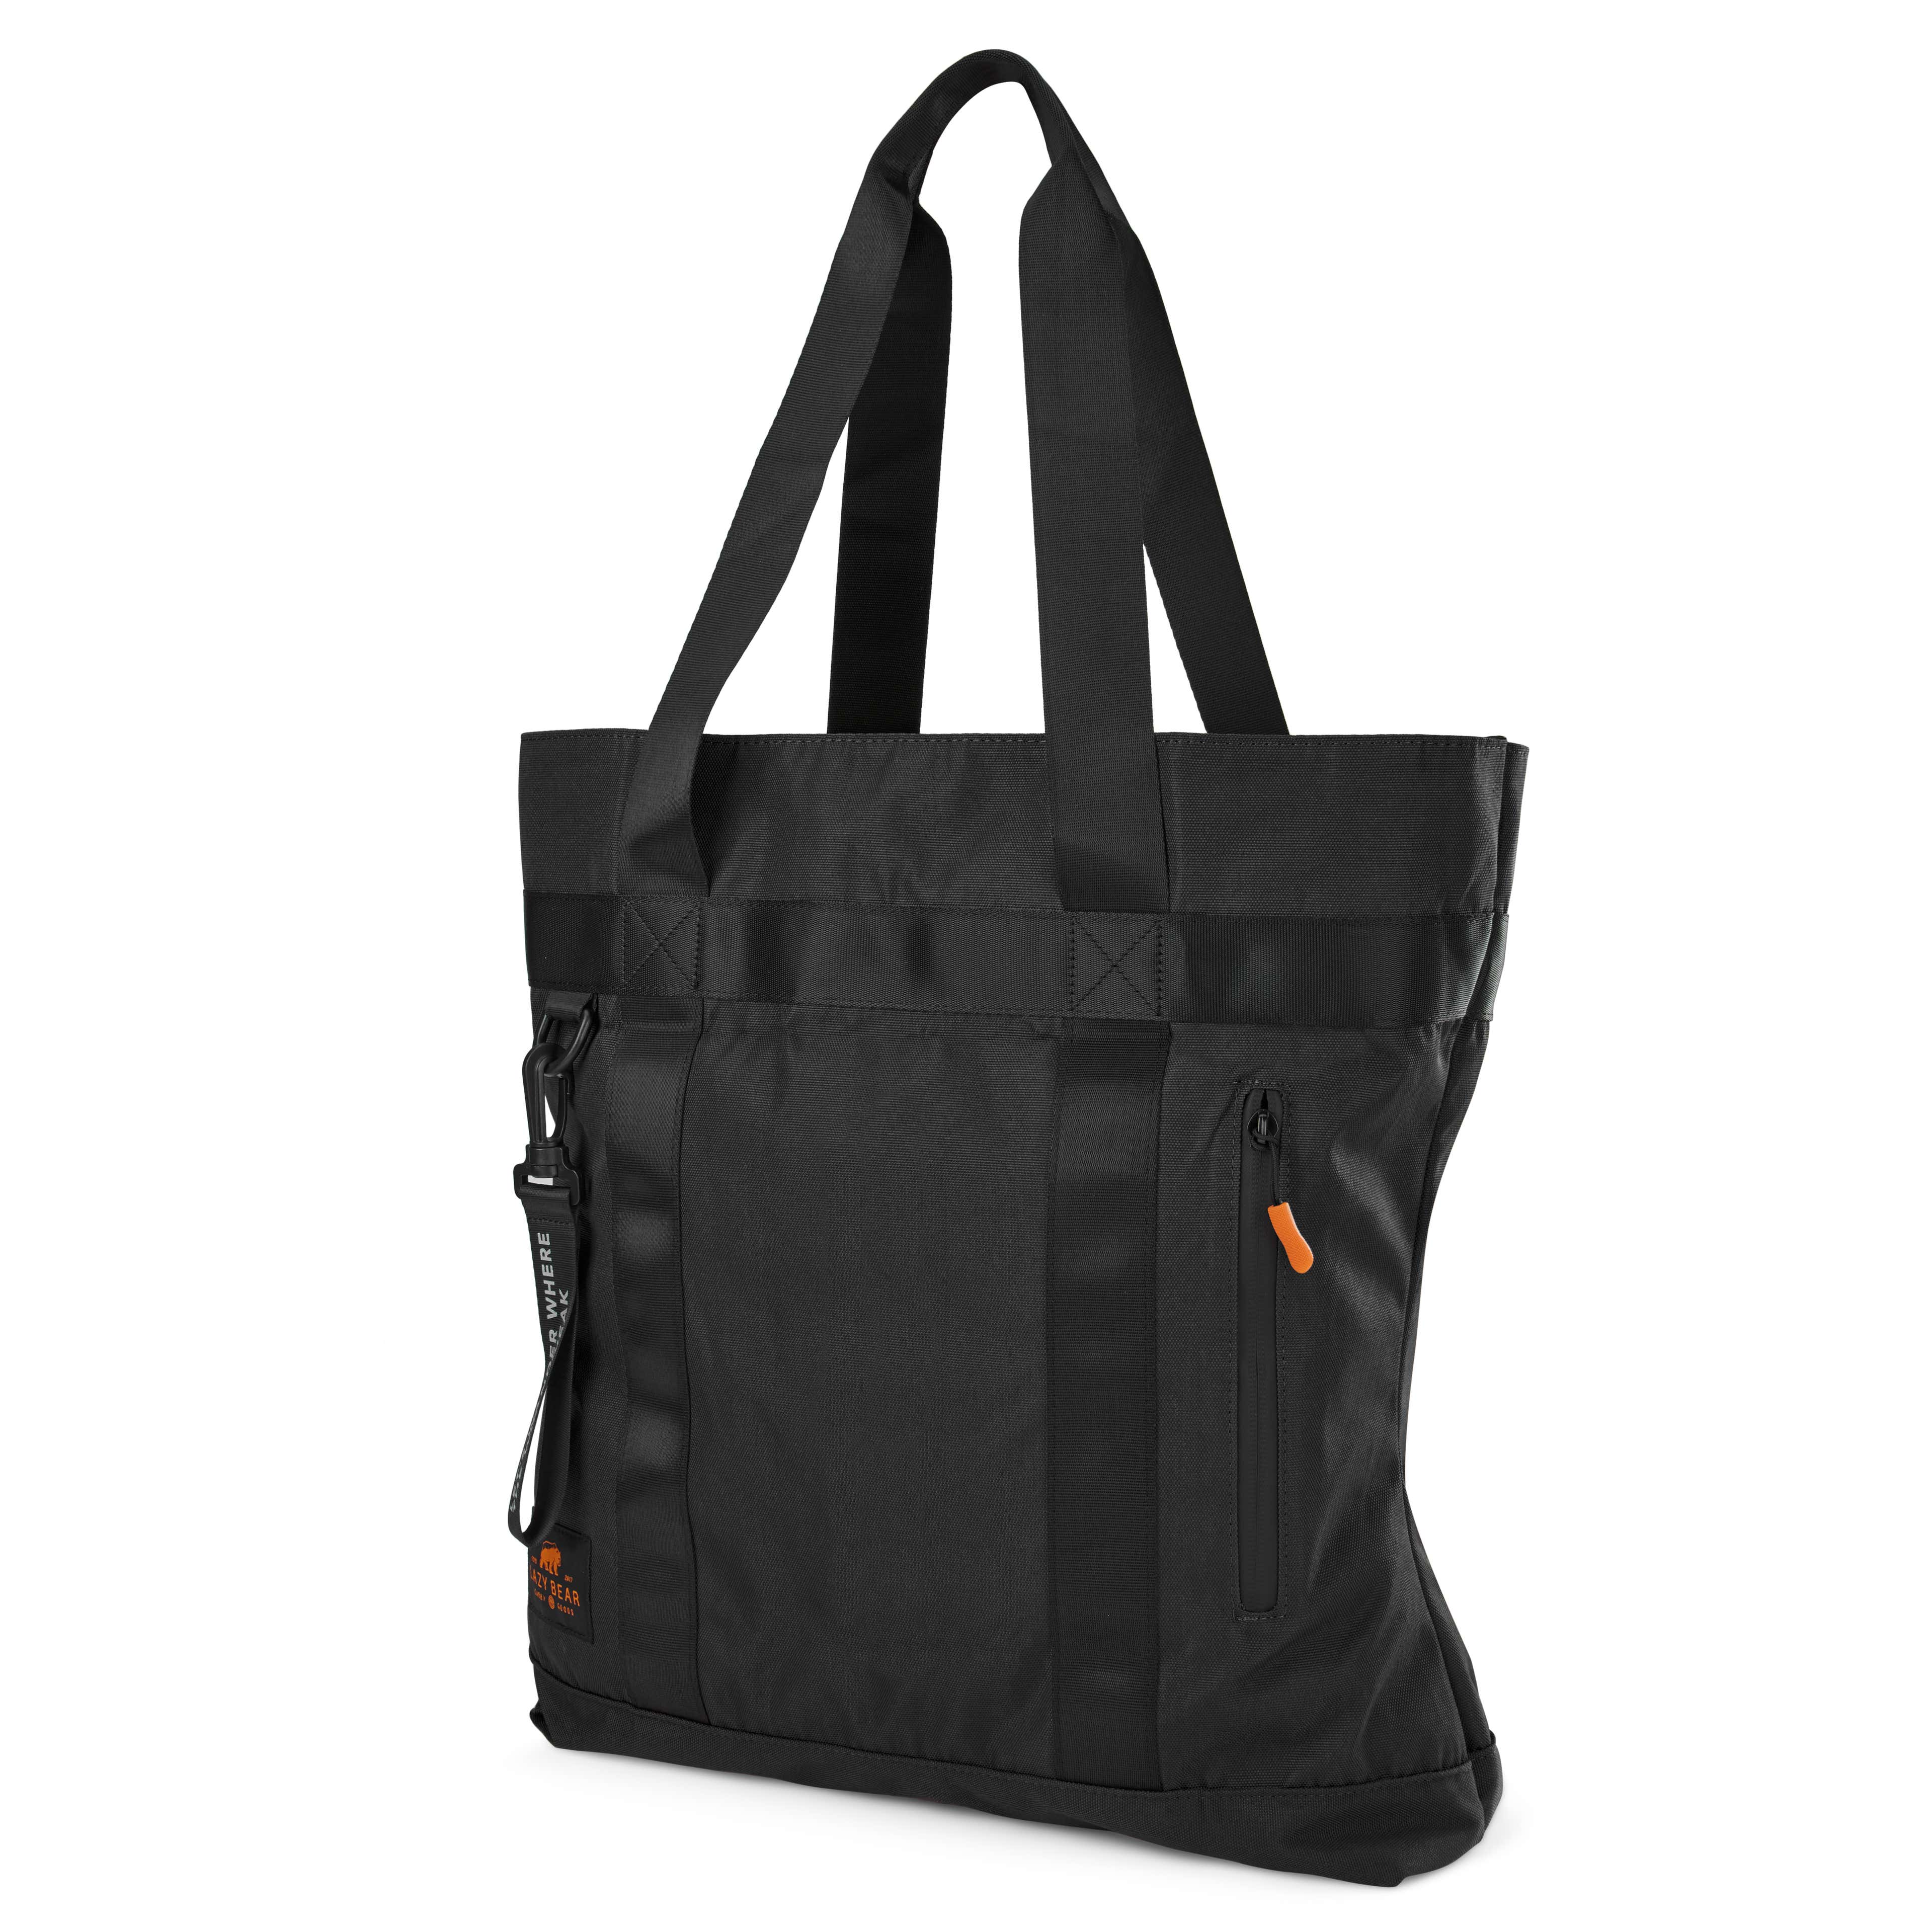 Lamair Black Foldable Tote Bag 